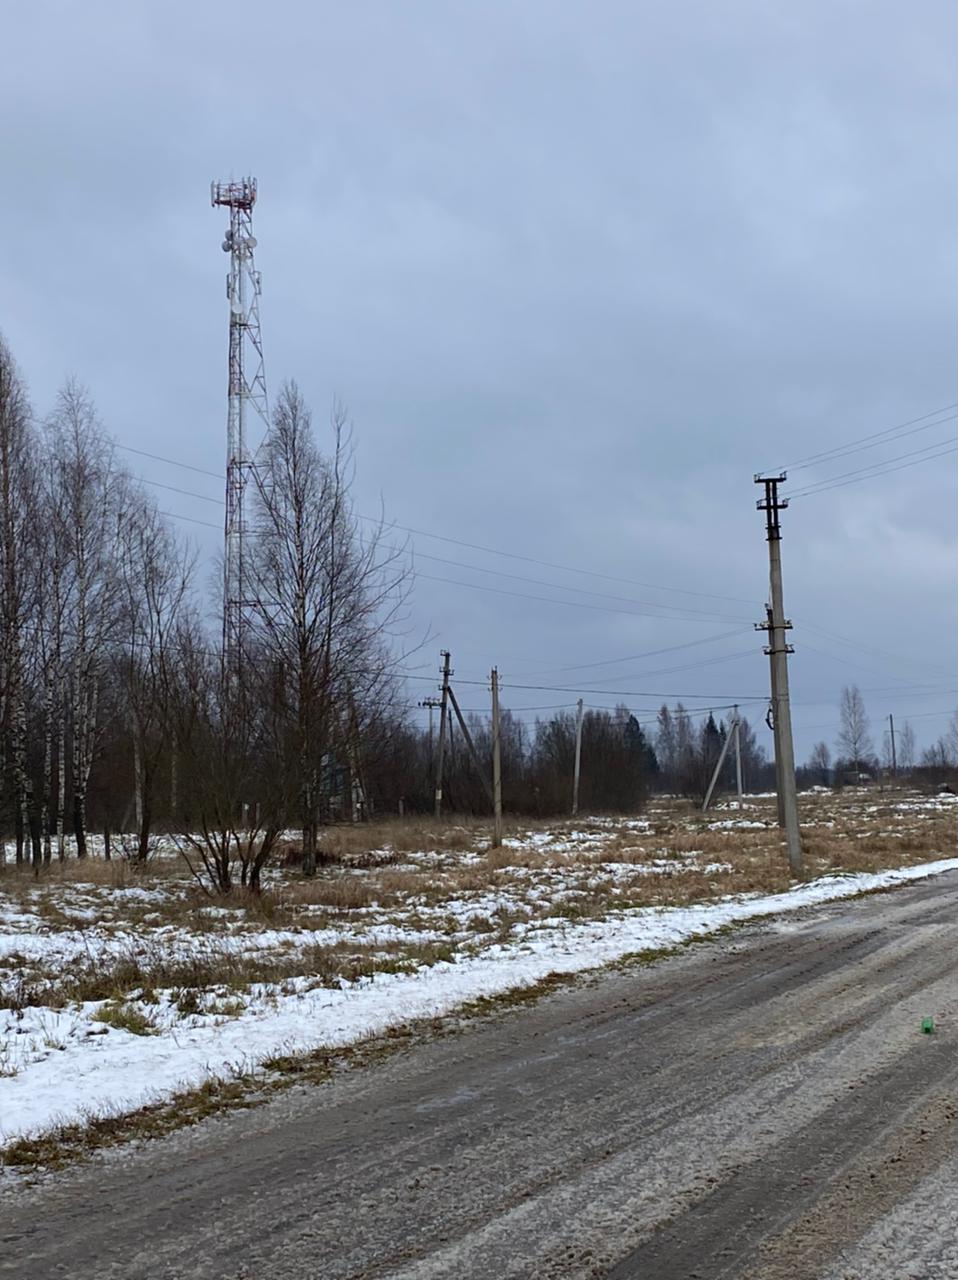 172 сельских фельдшерско-акушерских пункта впервые получили интернет для работы